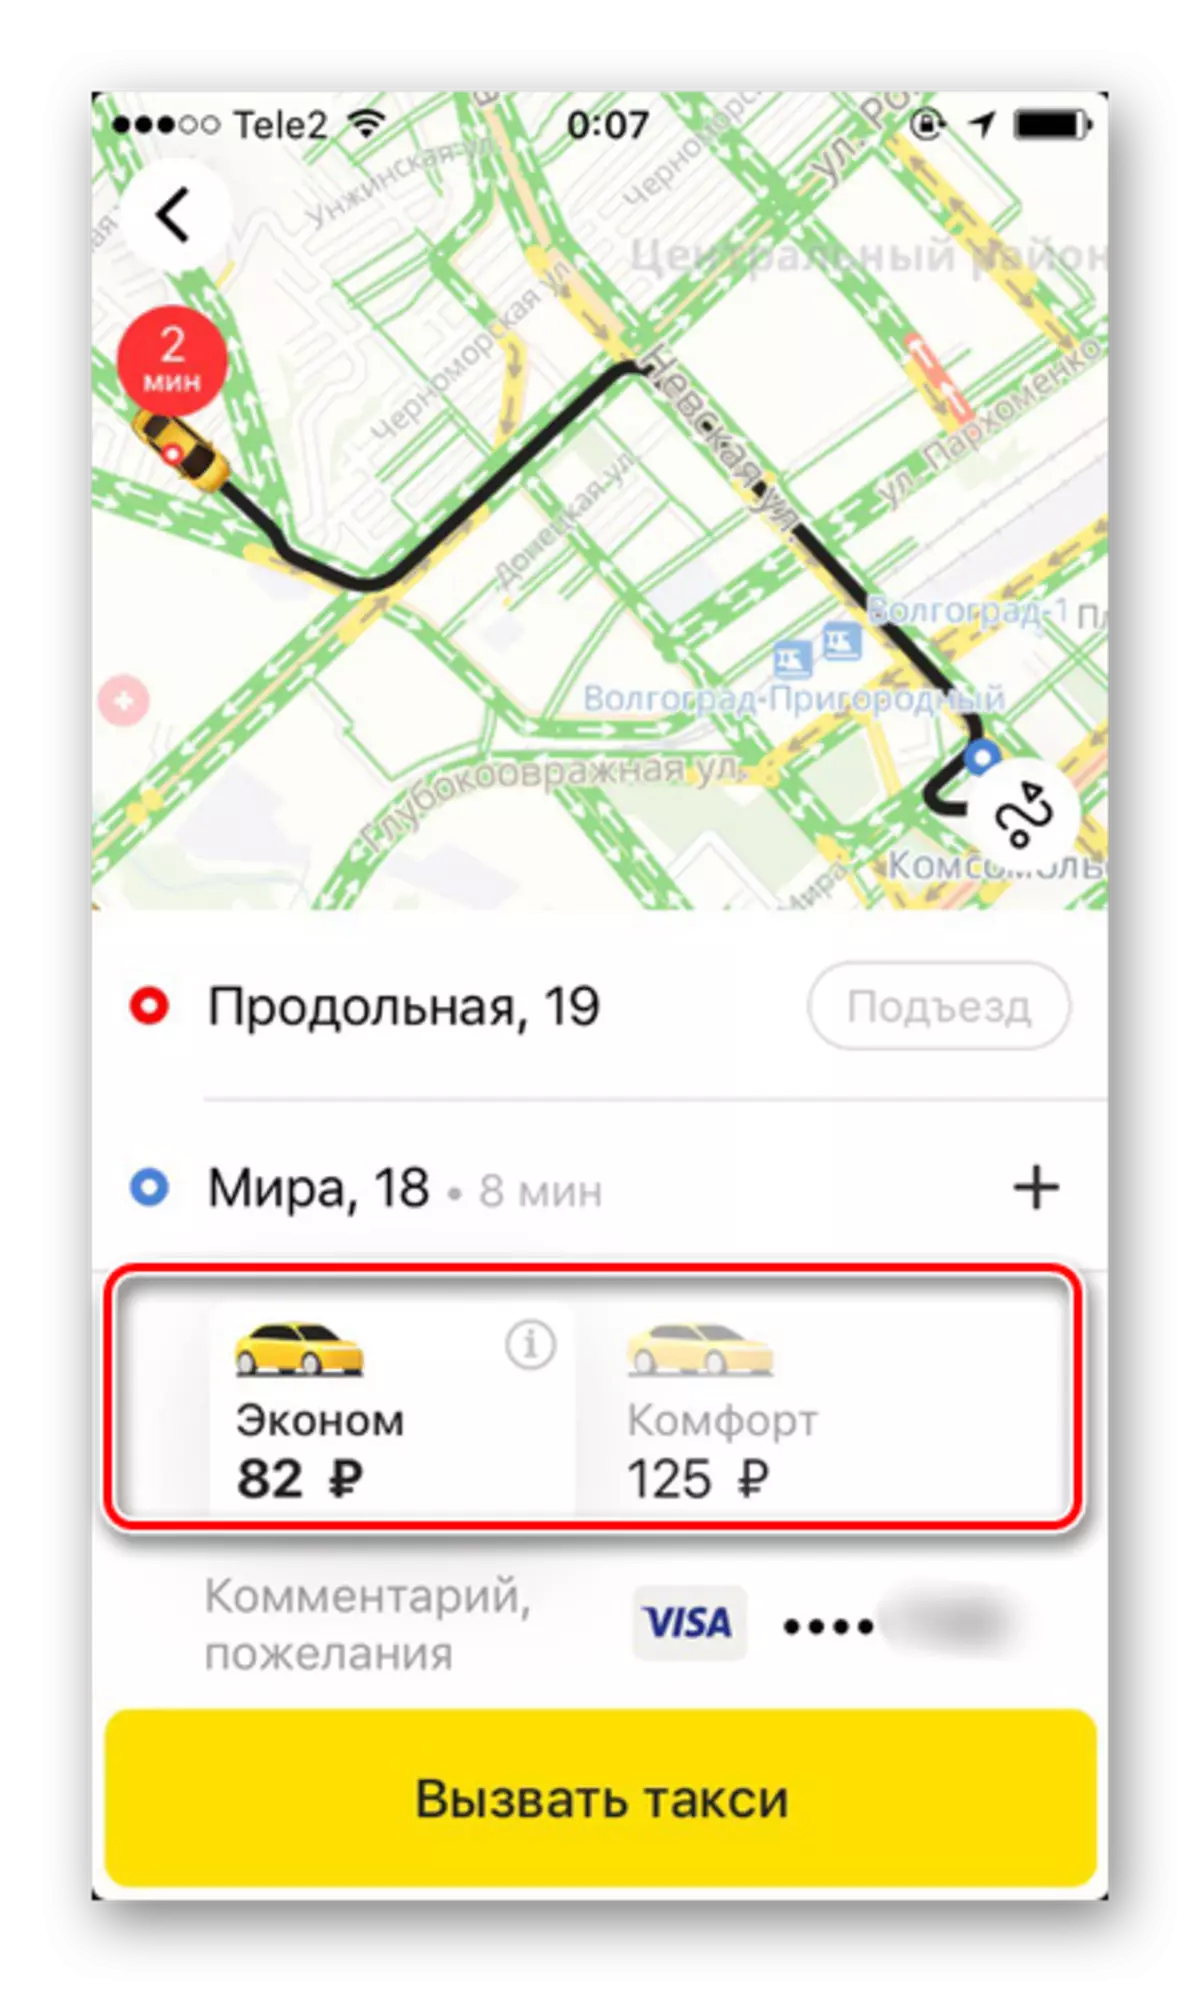 Thuế quan khả dụng Khi đặt taxi trong ứng dụng Yandex.Taxi trên iPhone